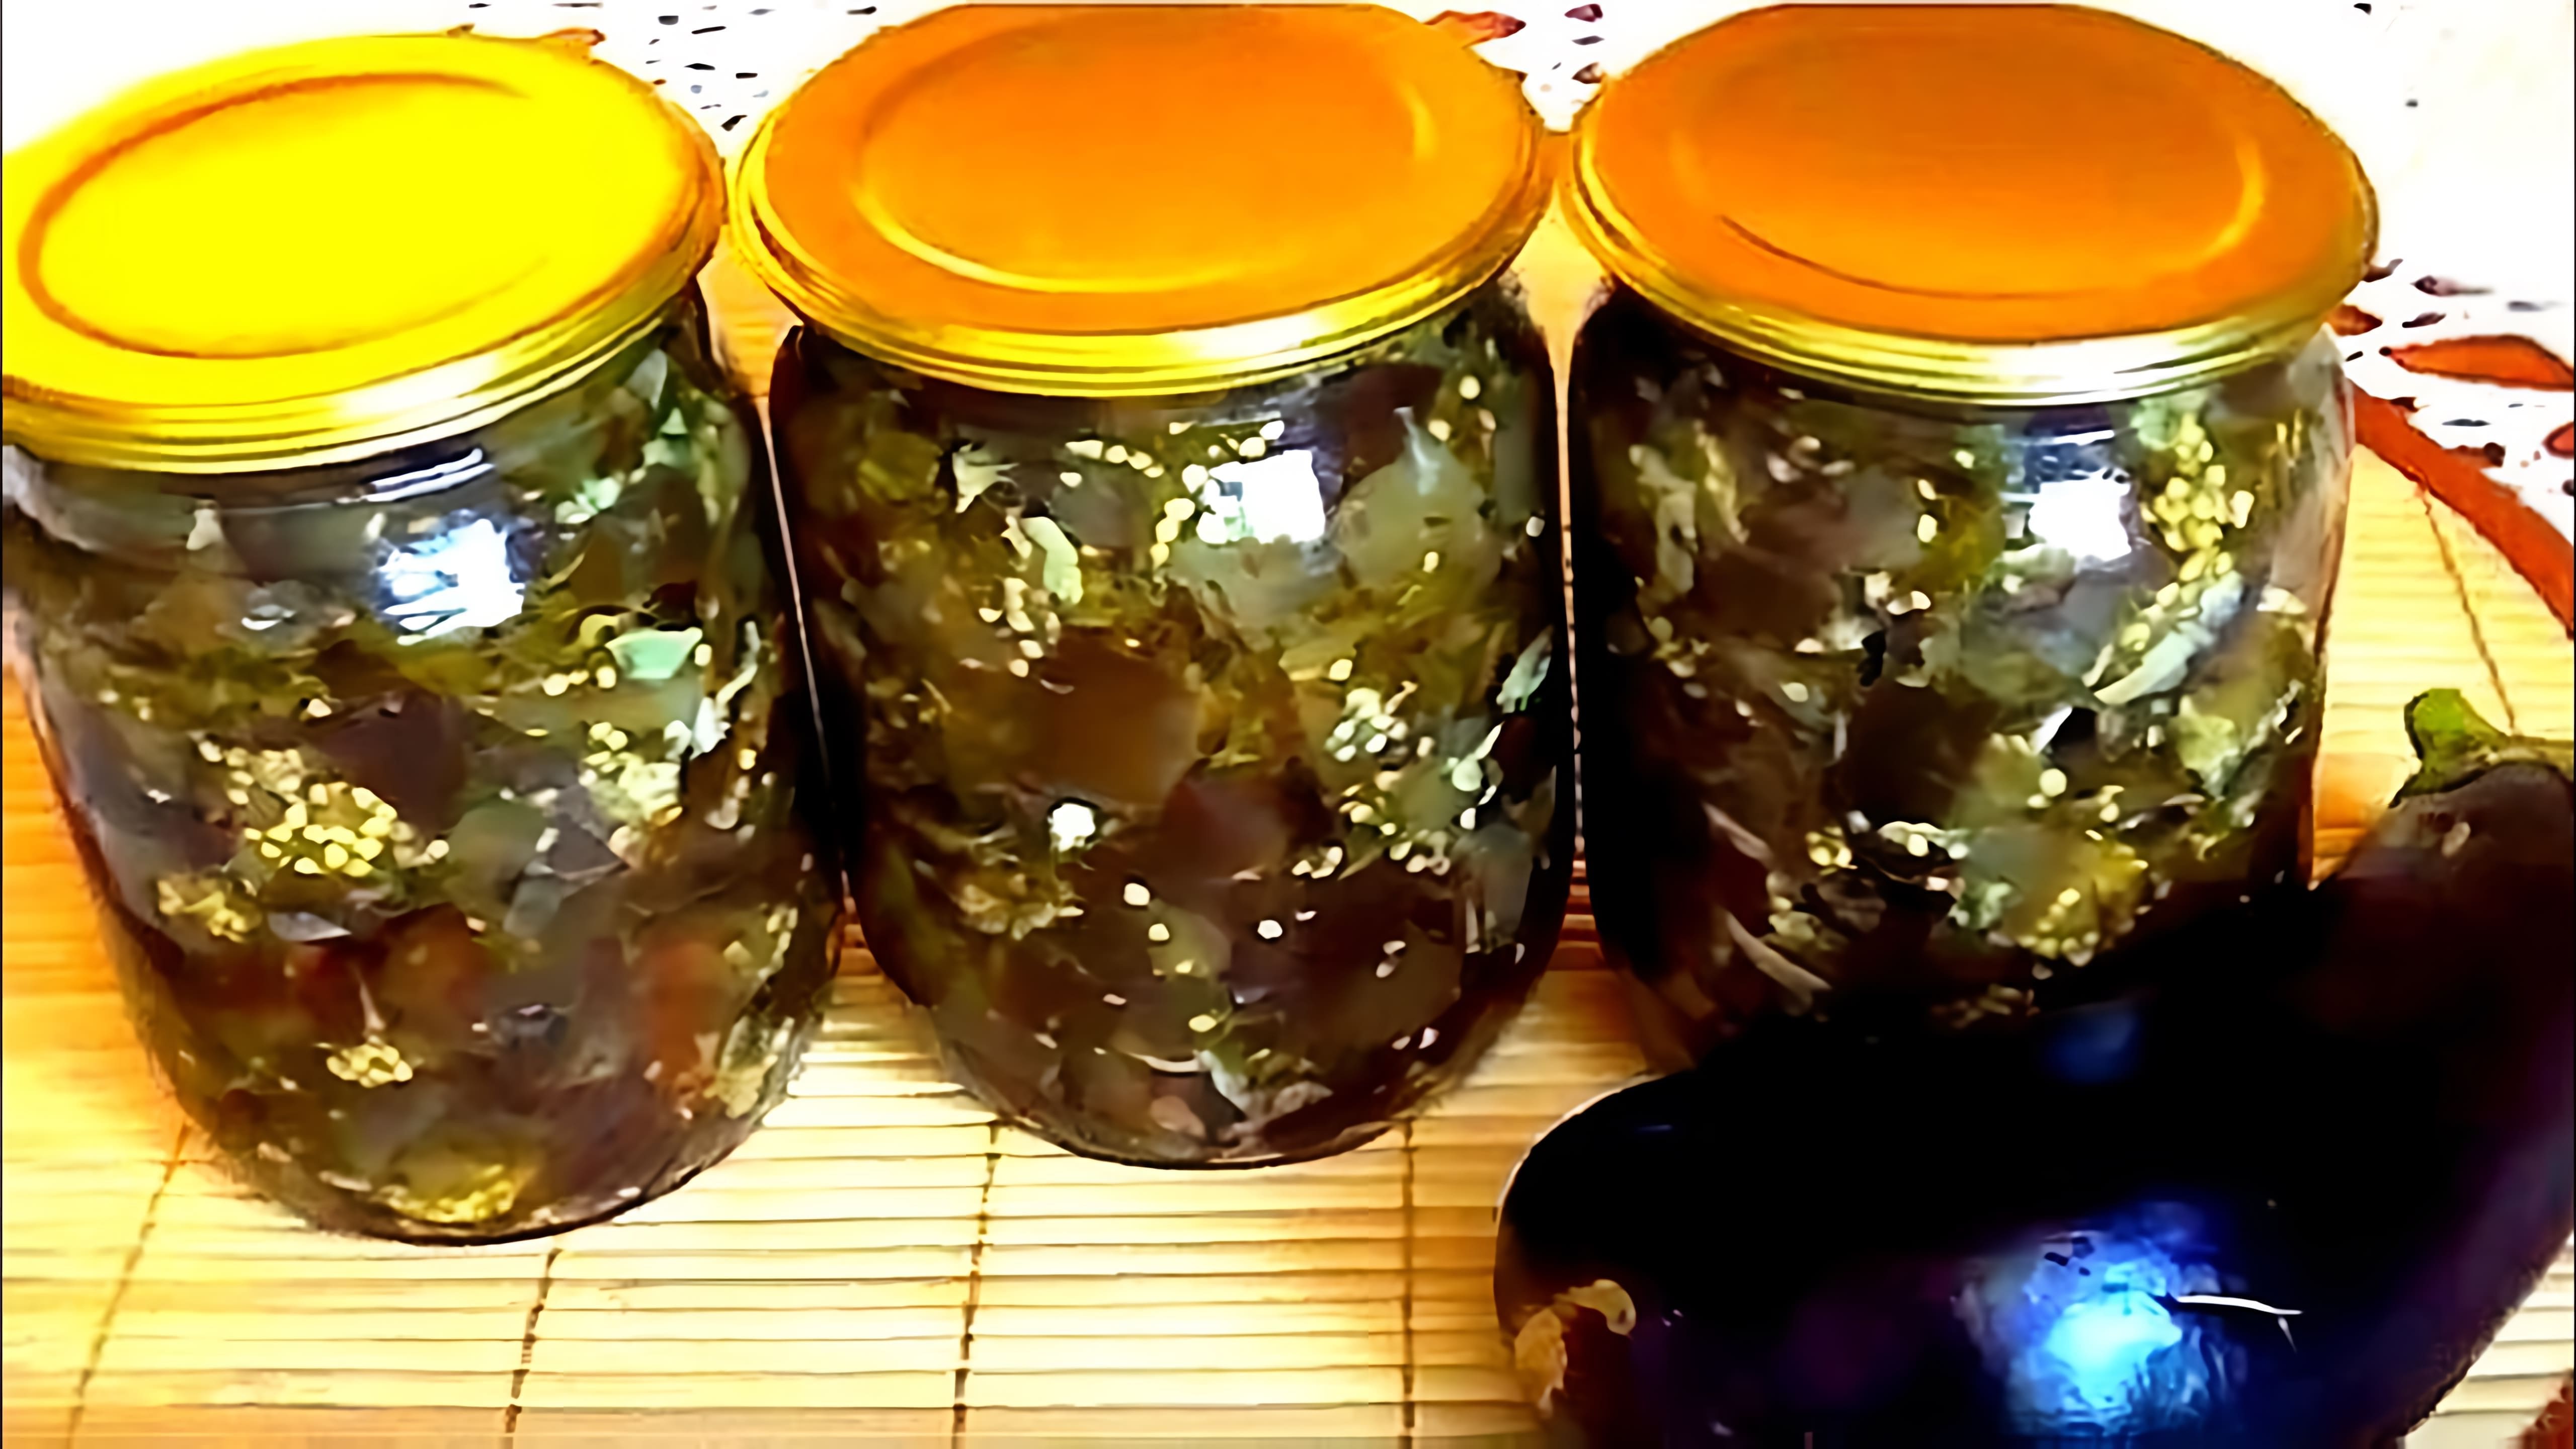 Видео рецепт для приготовления маринованного баклажана, похожего на маринованные грибы, на зиму